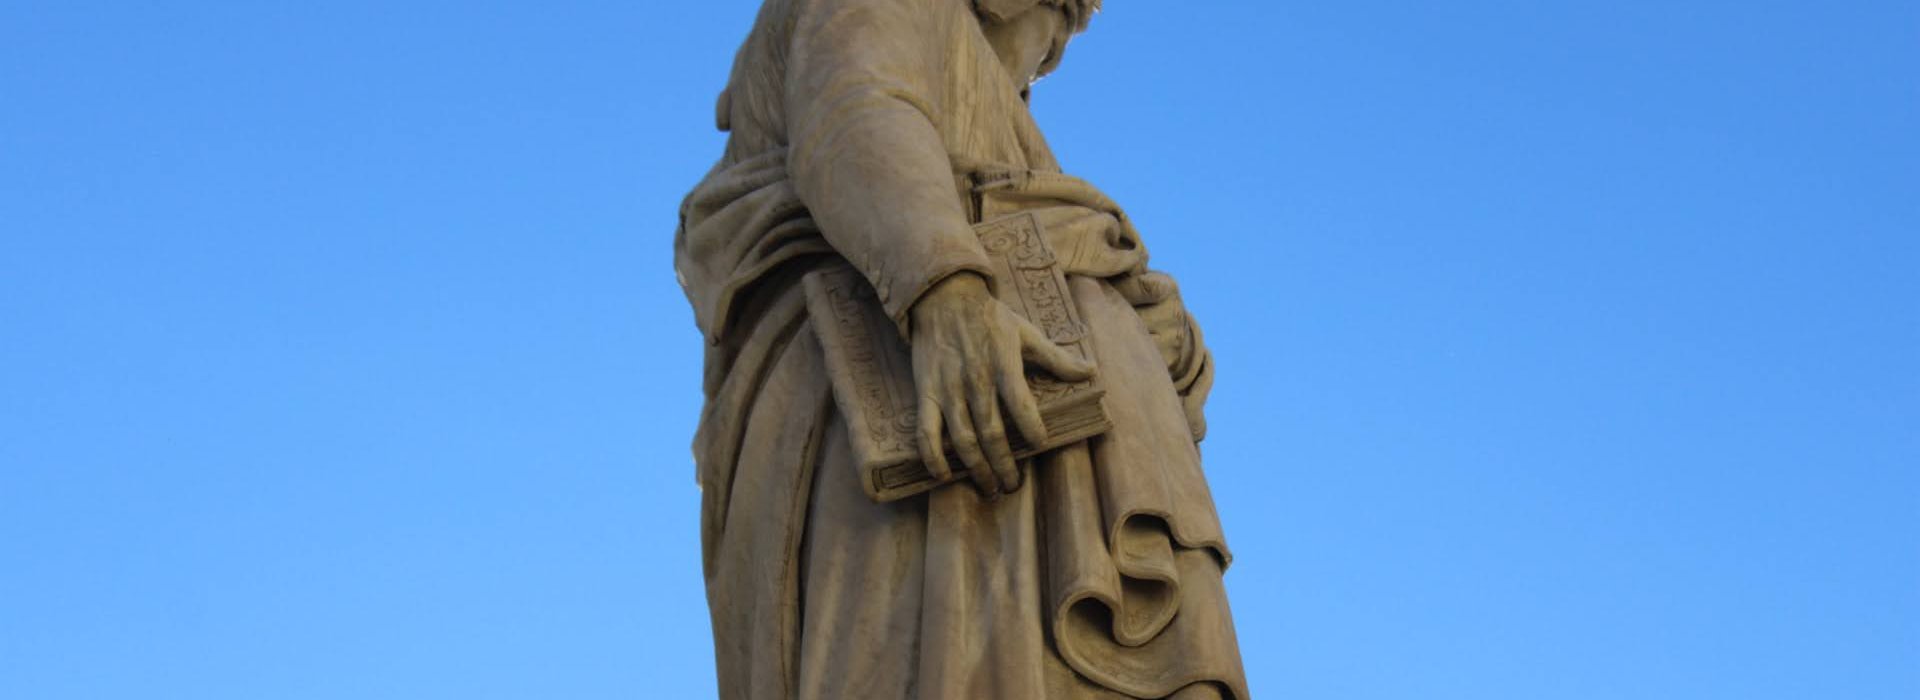 Statua Dante Alighieri